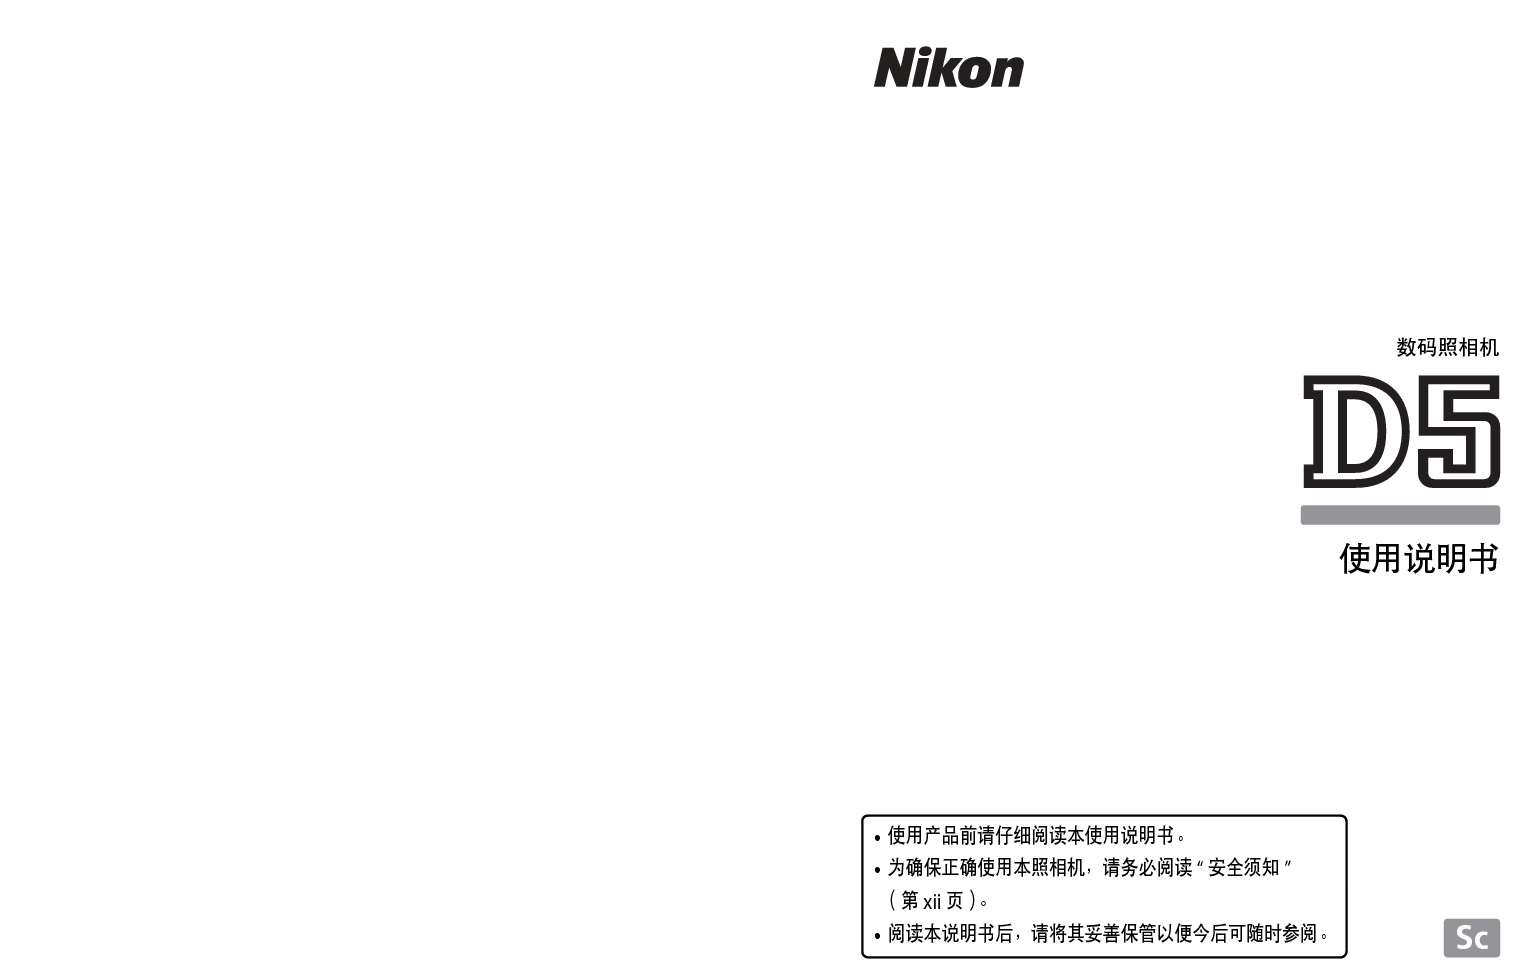 尼康 Nikon D5 国际版 使用说明书 封面